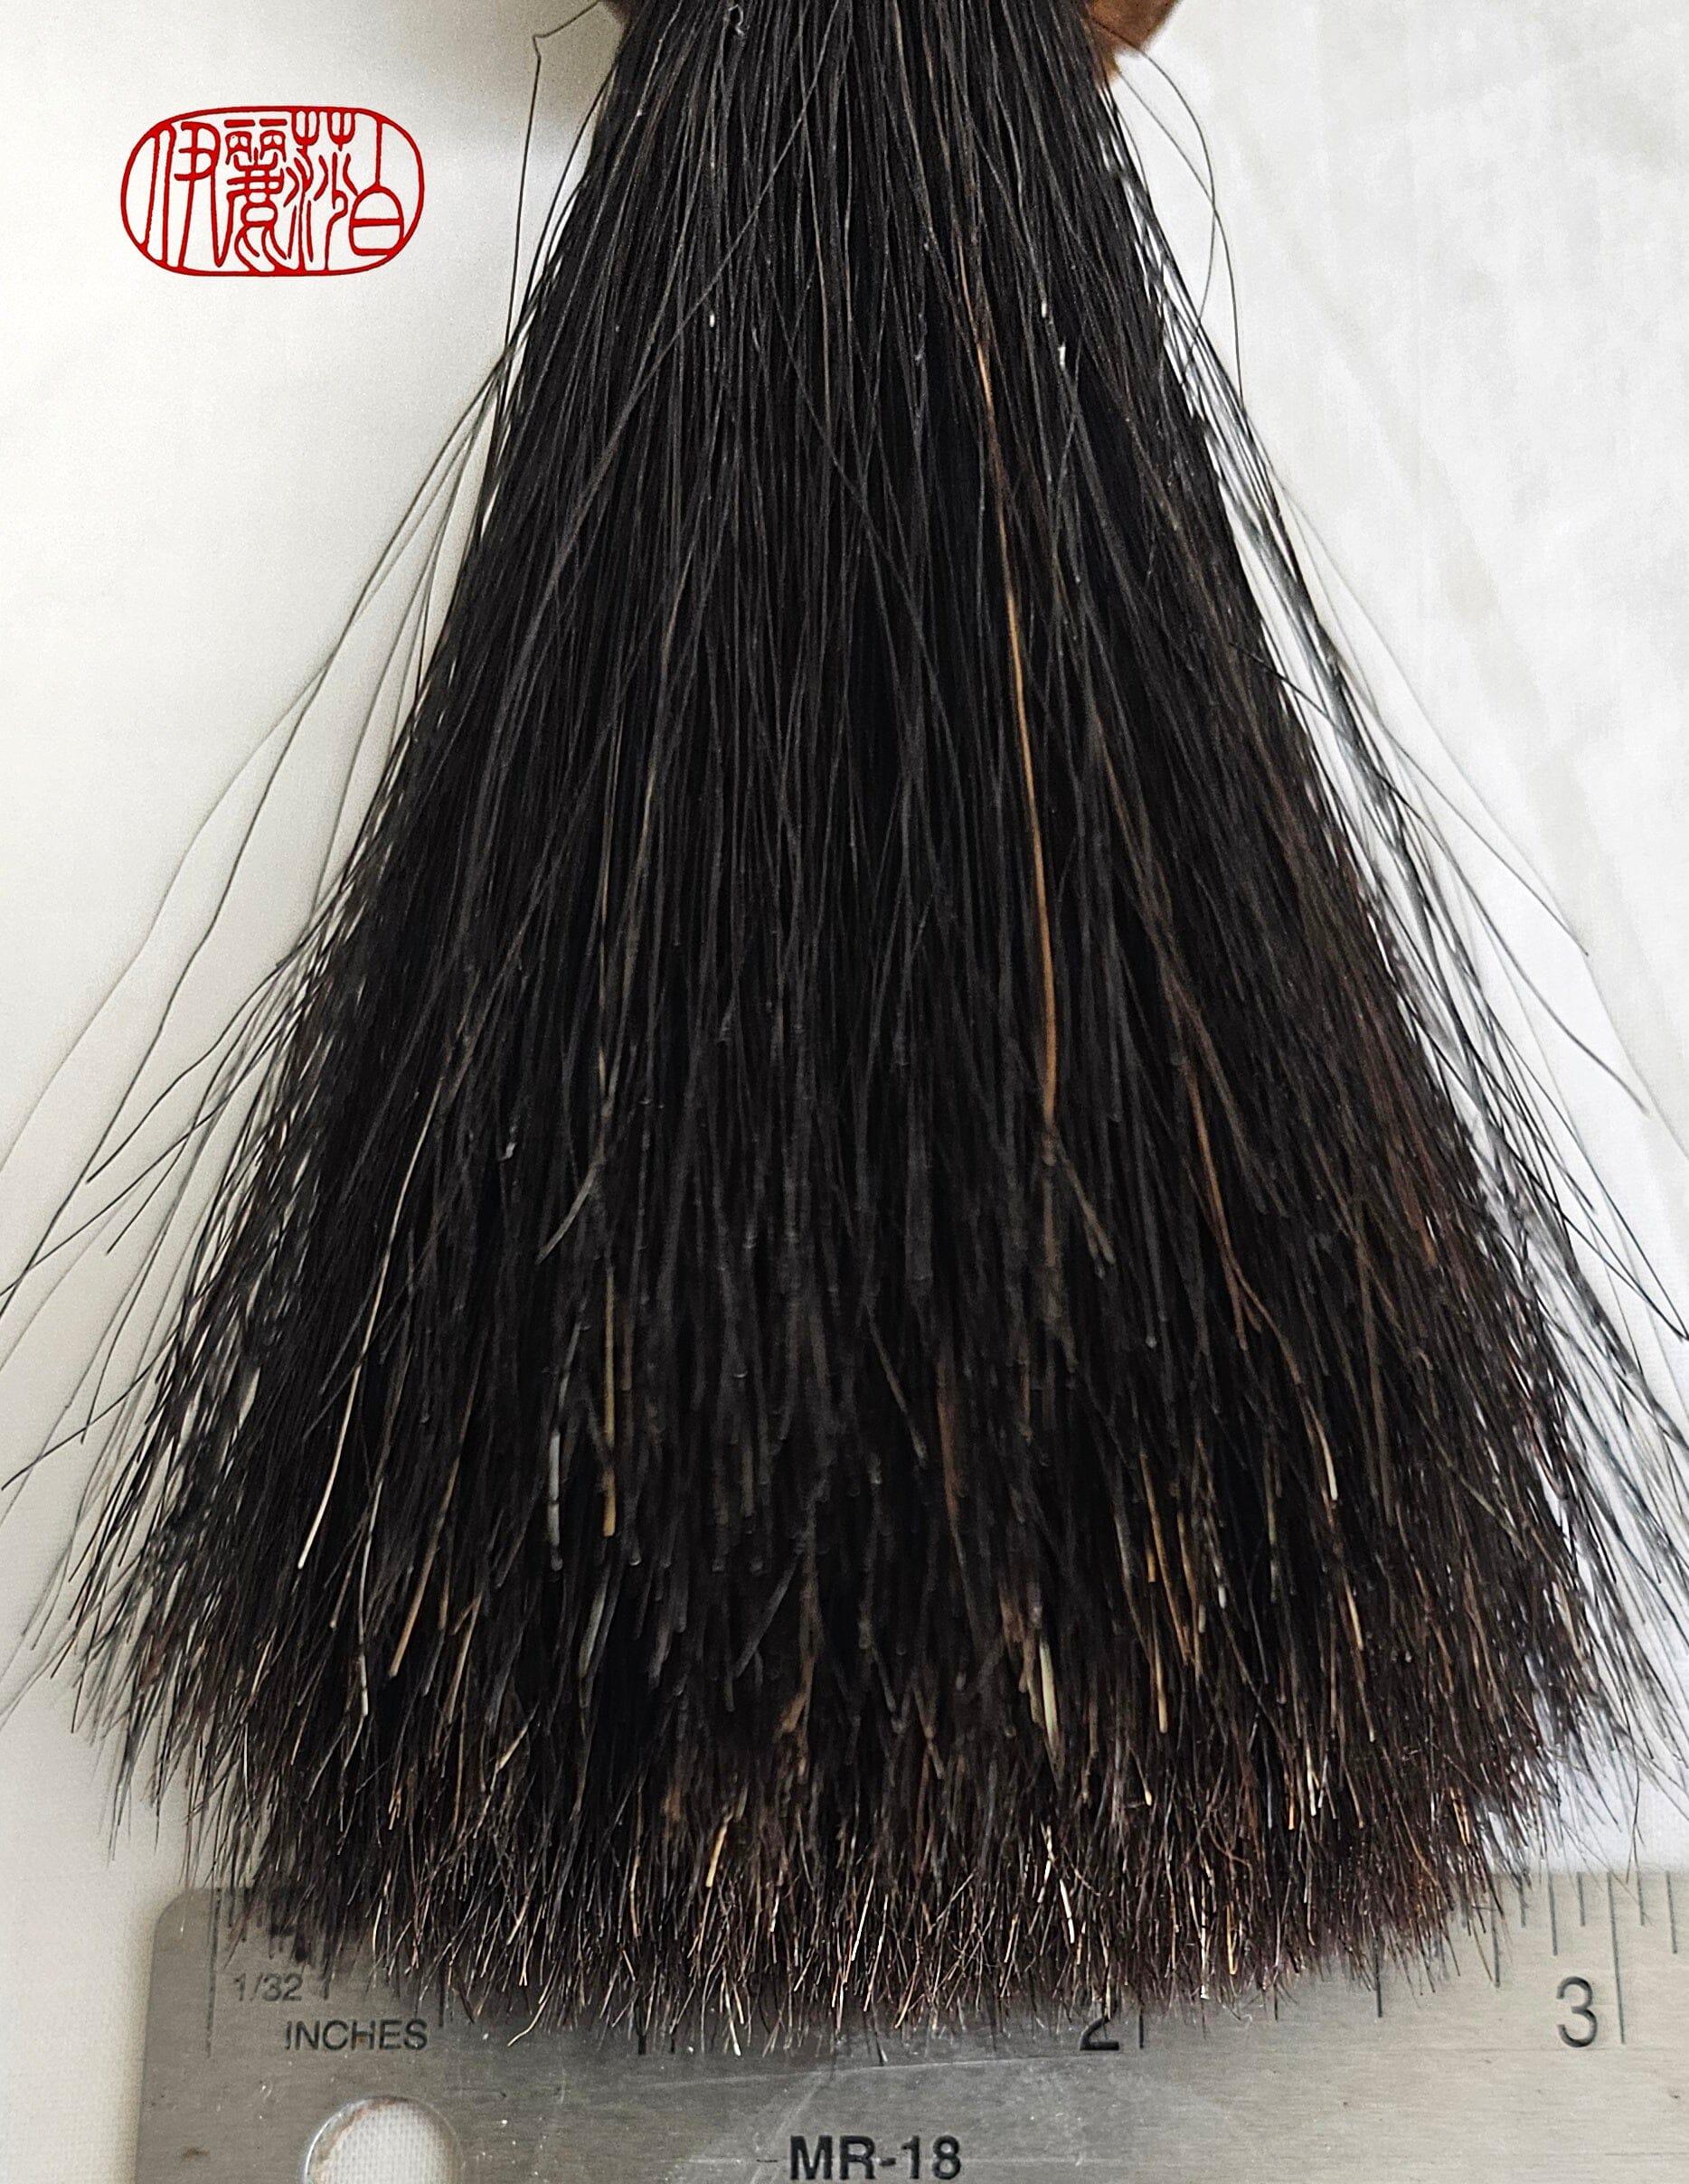 Bamboo Handled Sumi-e Brush with Premium Black Horsehair Paint Brush Elizabeth Schowachert Art